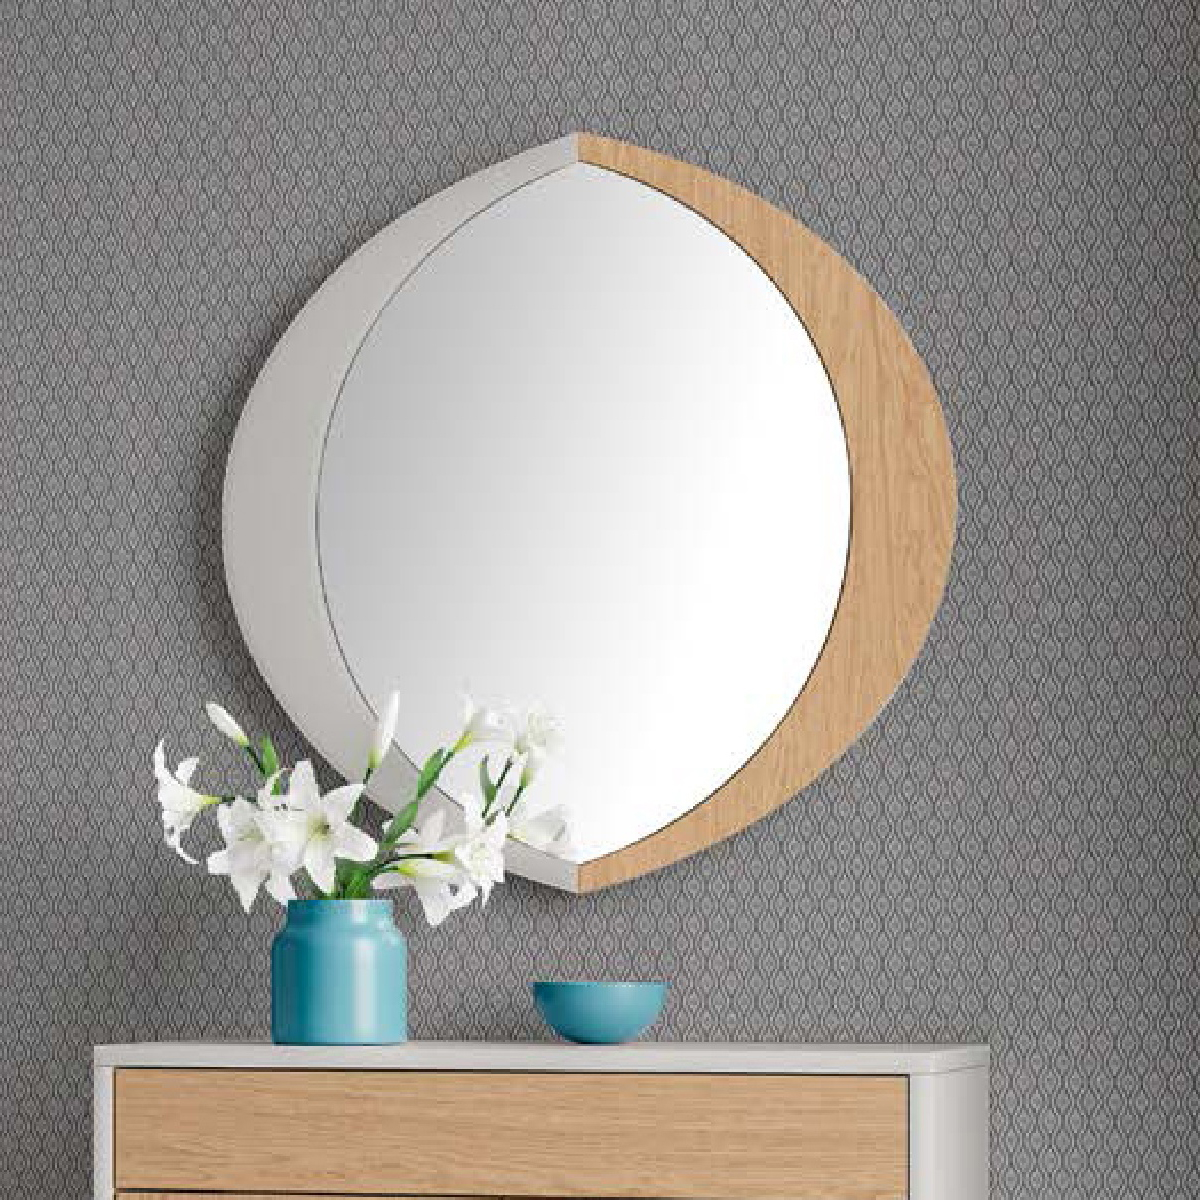 Зеркало с рамой Disemobel Kendra, цвет Perla/ Roble Seda, размер 75x2x75 см (4012)4012